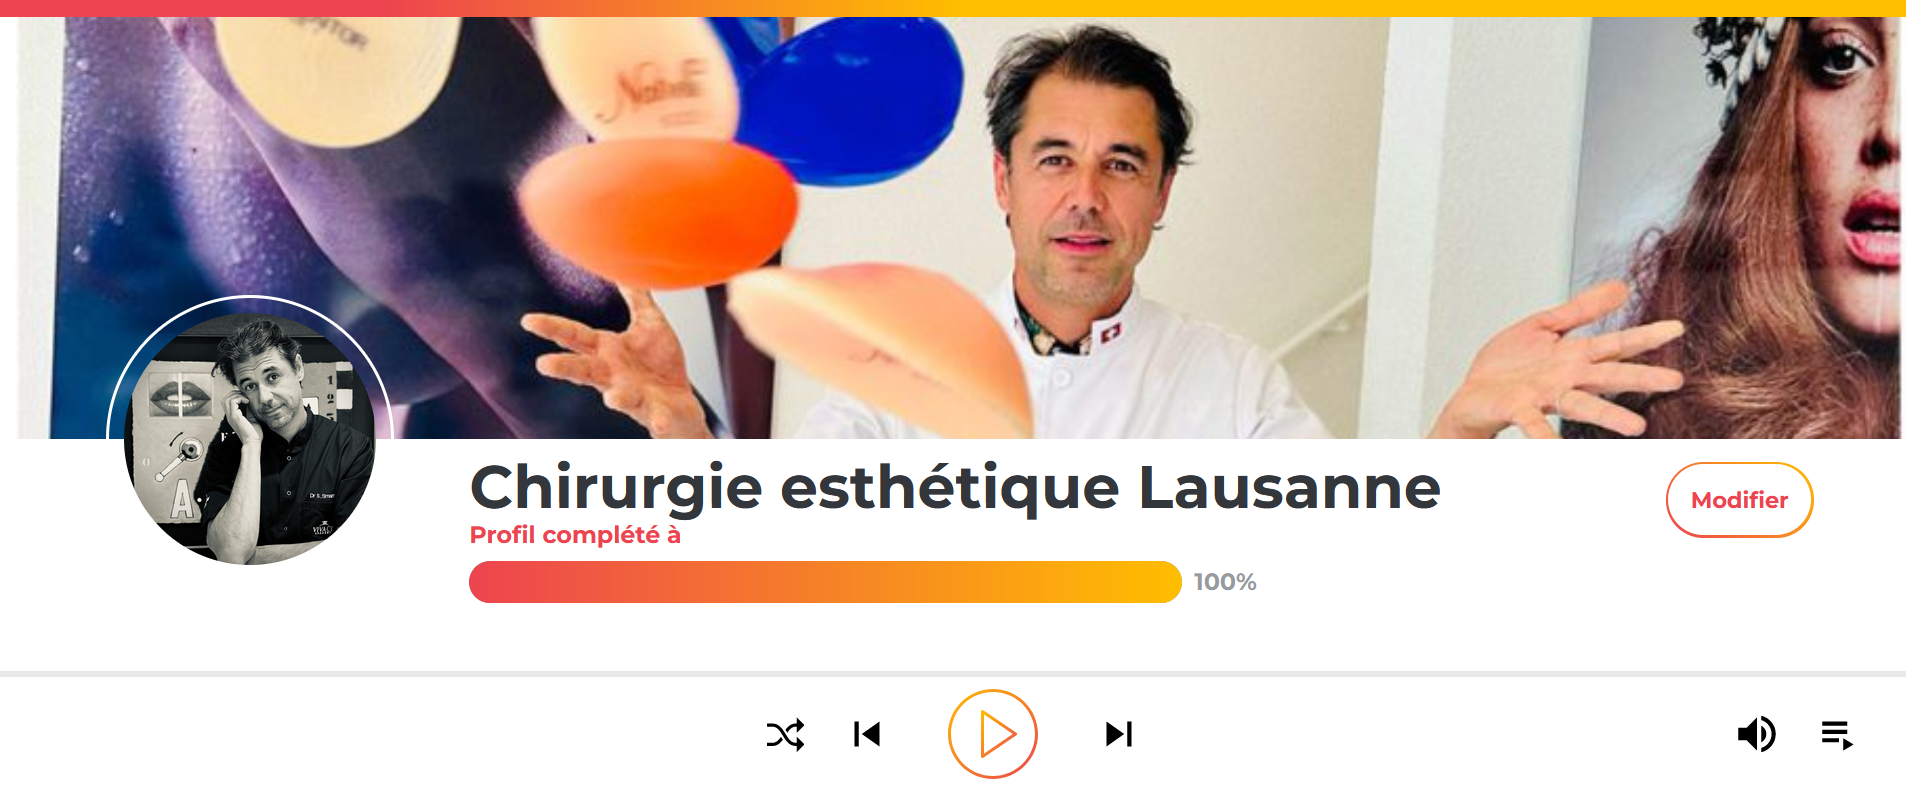 Chirurgien esthétique Lausanne : Le Dr Smarrito propose un Podcast